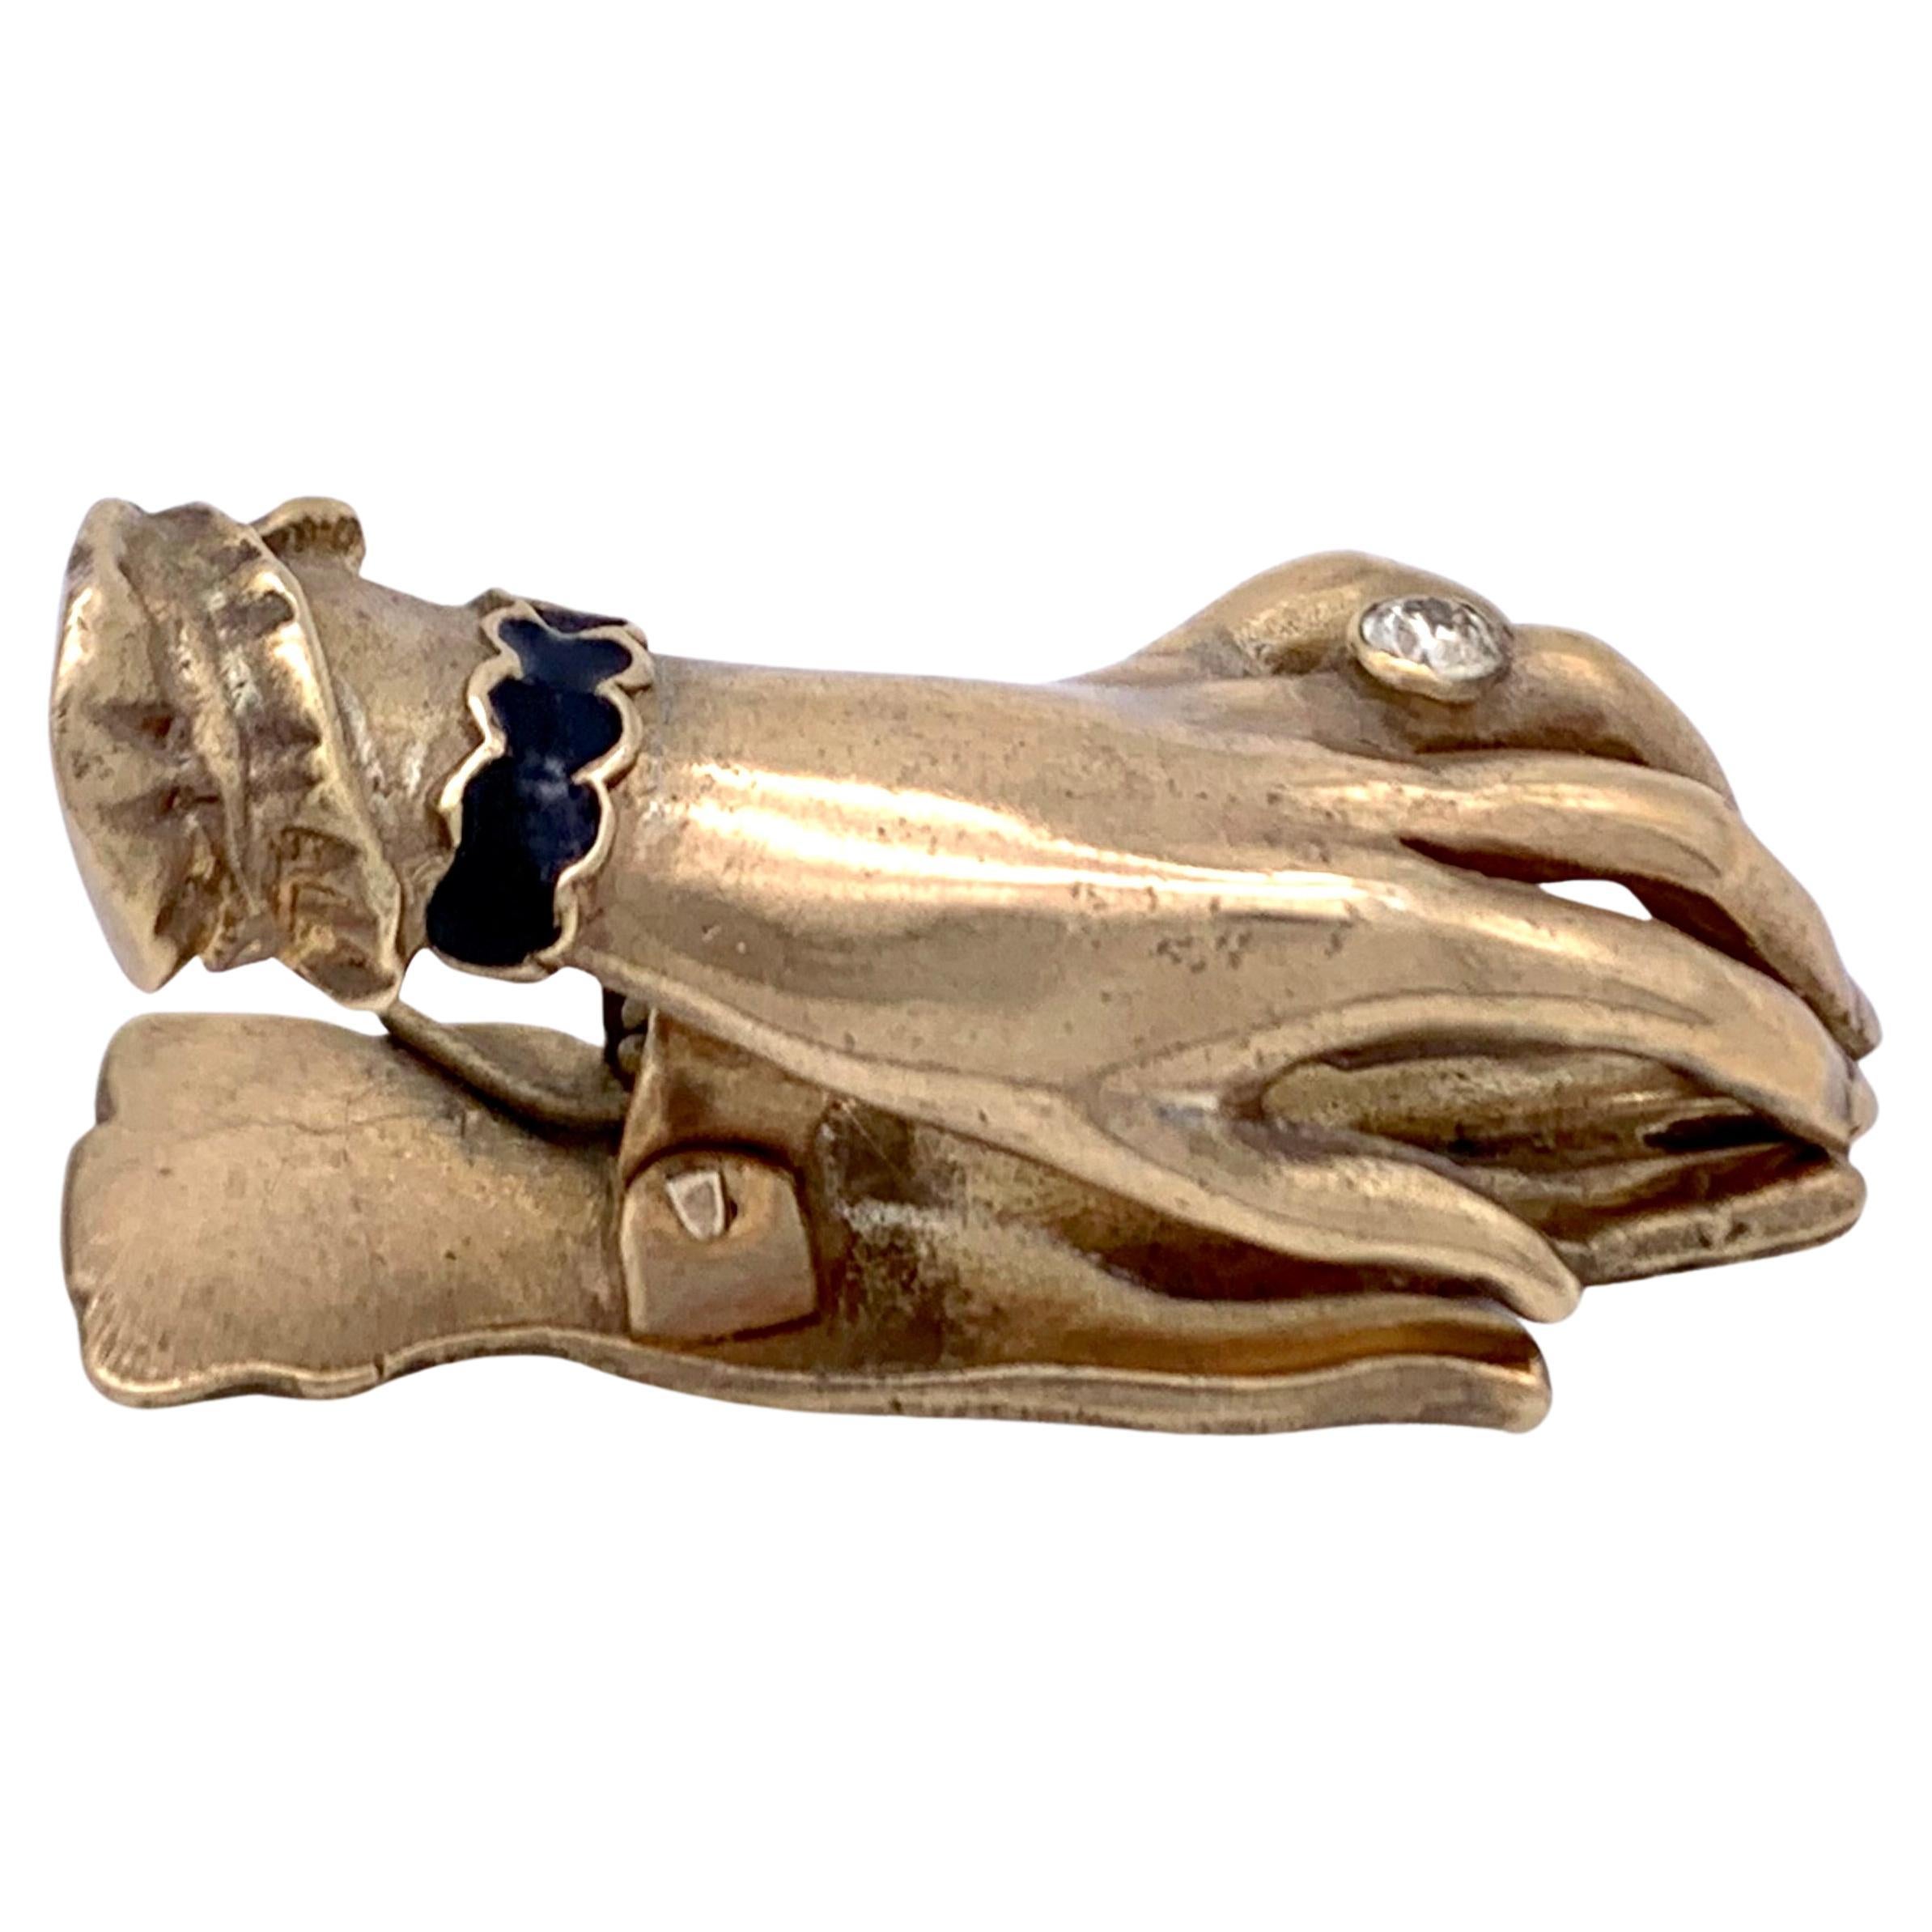 Antique Belle poque Hand with Diamond Ring Paperclip Accessoire de bureau en argent